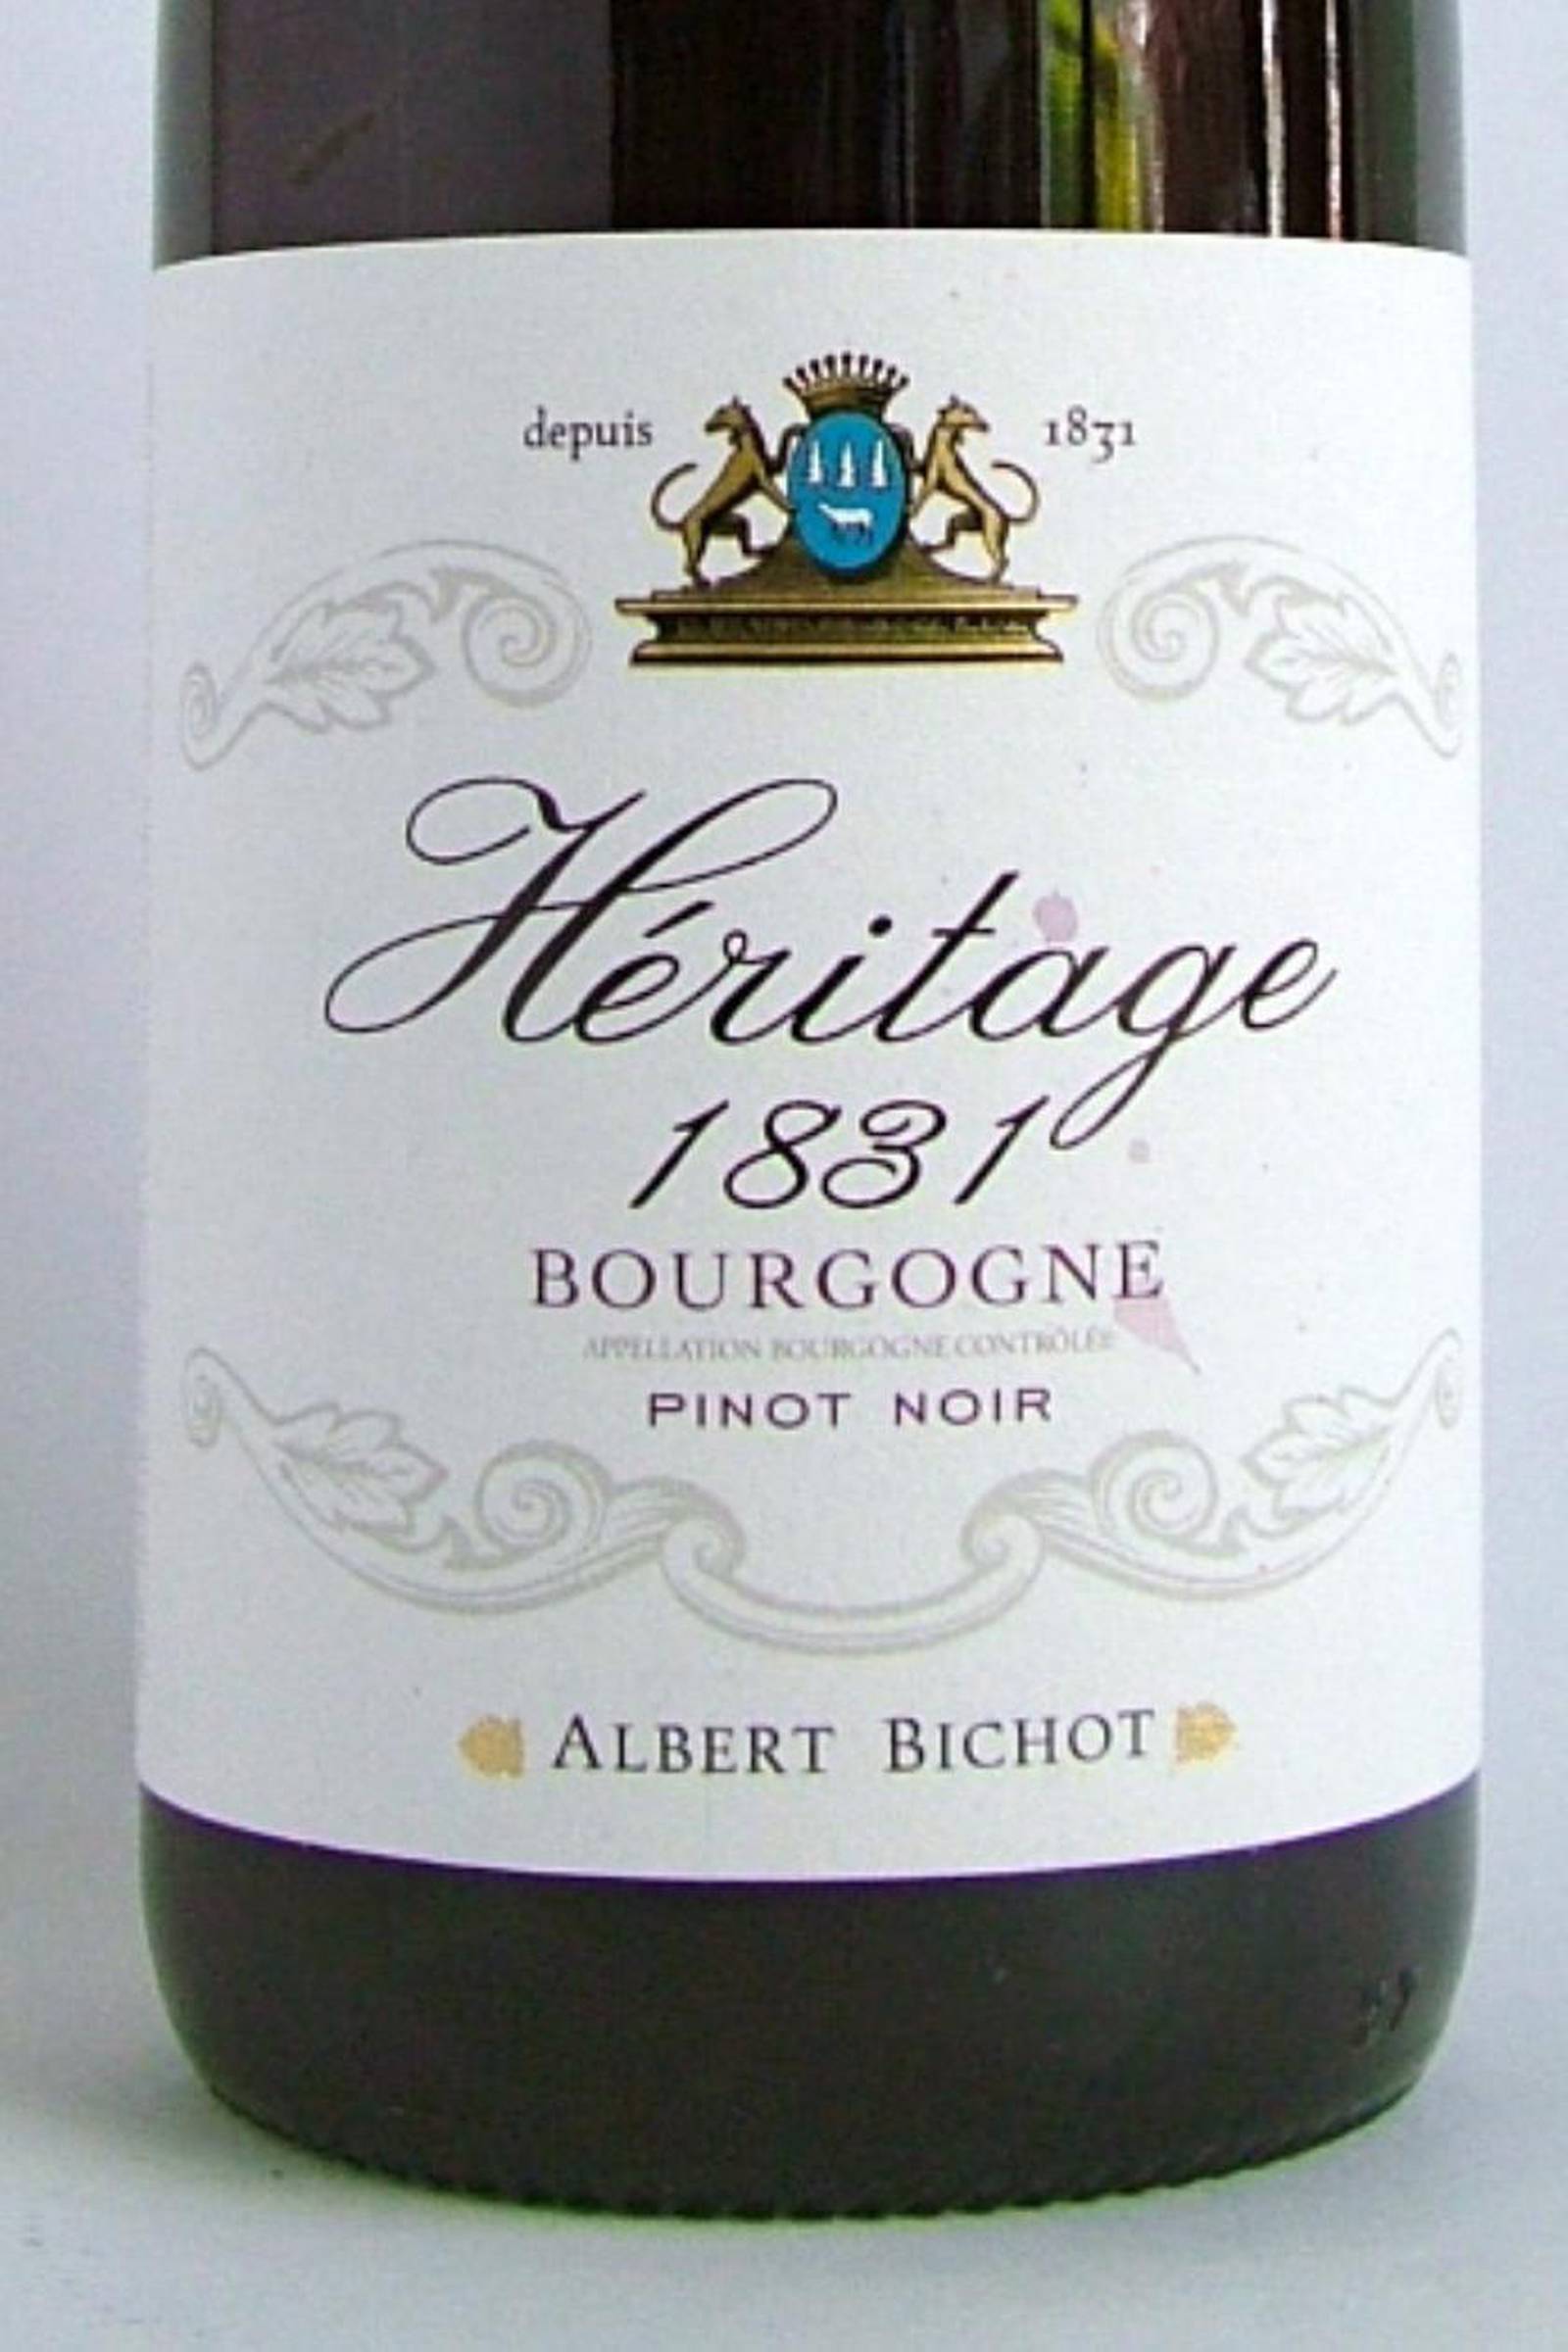 bourgogne-h-ritage-1831-albert-bichot-2012-12-5-23-25-the-irish